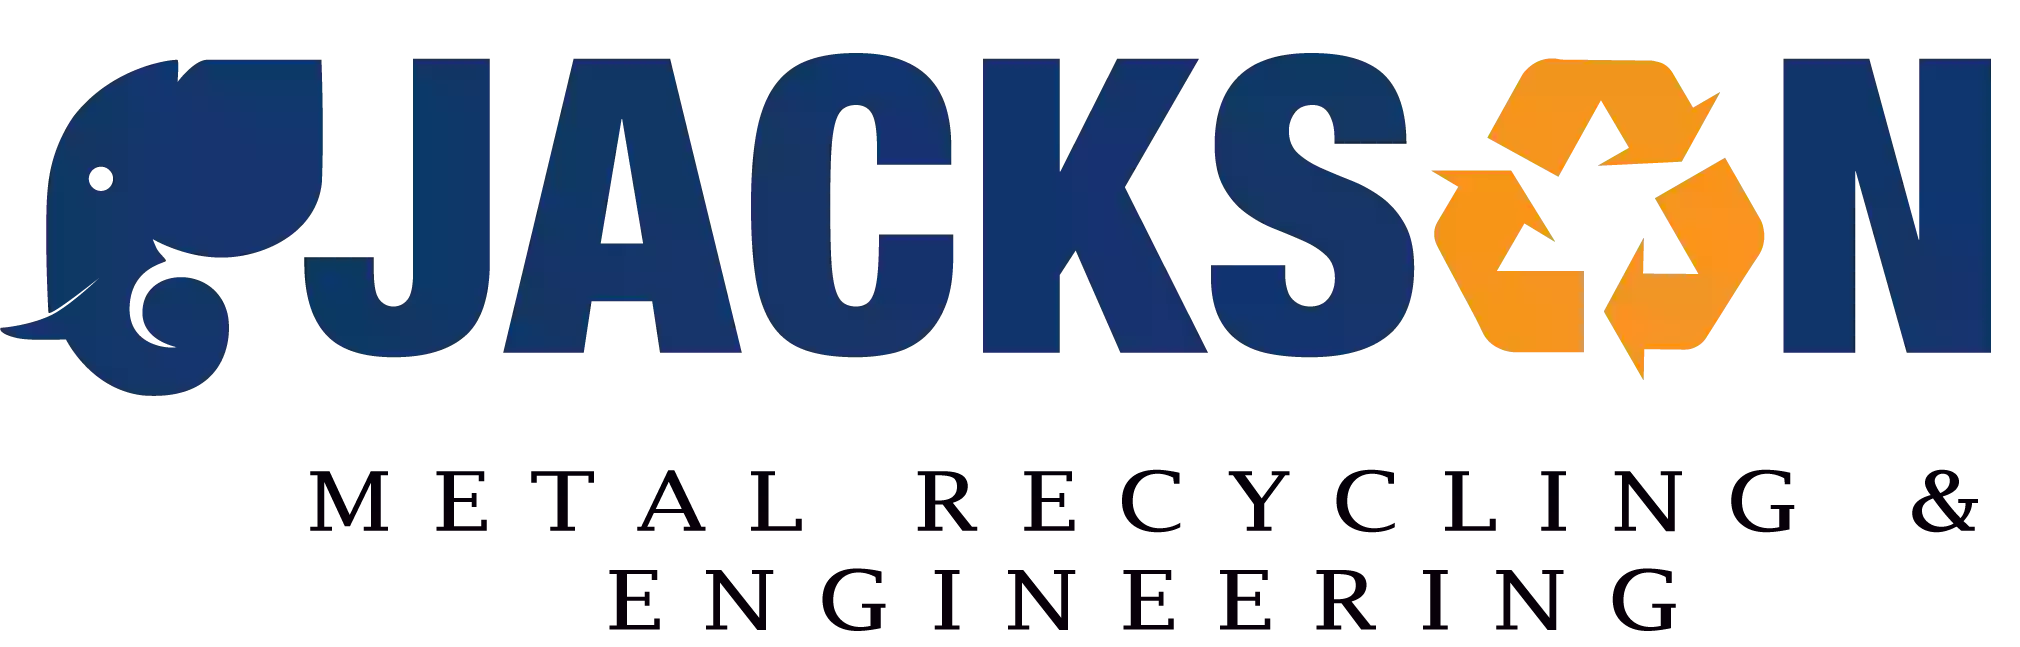 Jackson Engineering (Castlebar) Limited